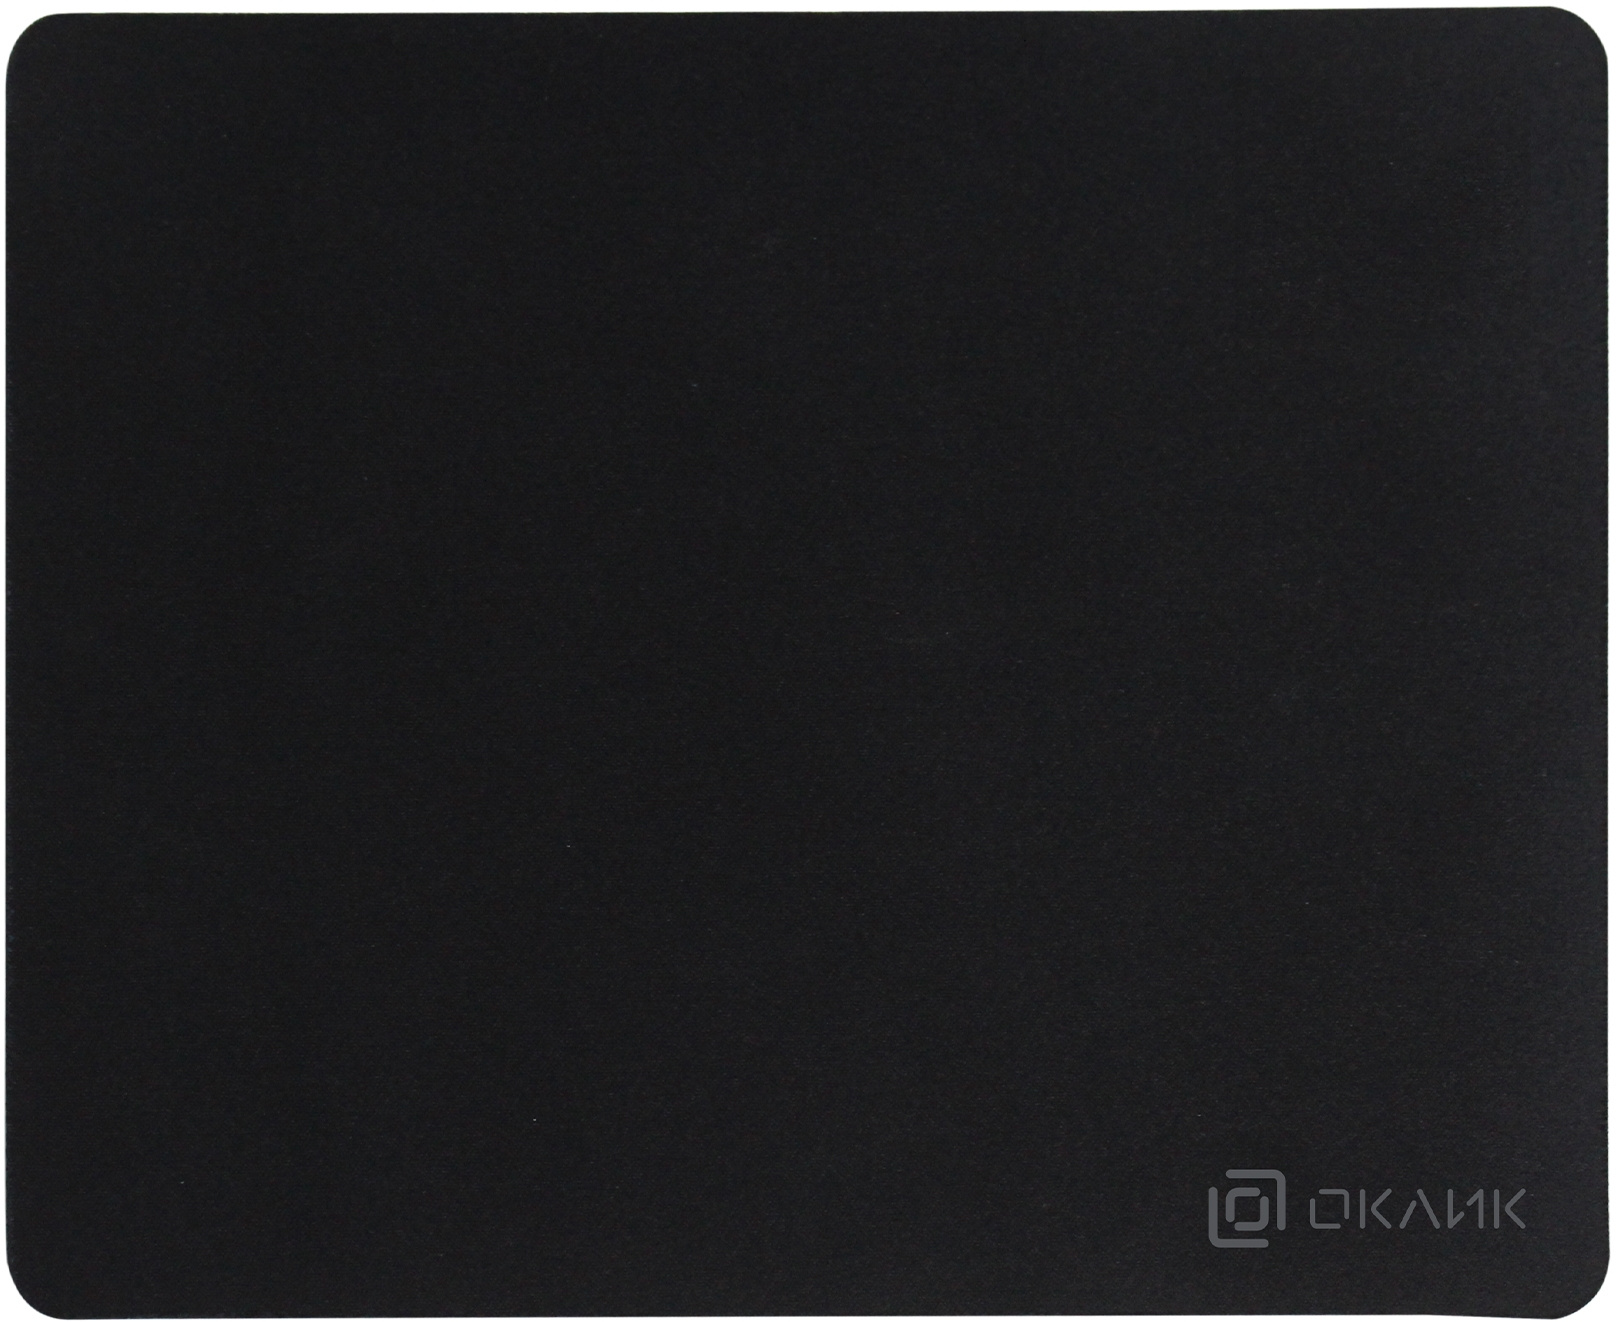 Коврик для мыши Oklick OK-T250, 250x200x2мм, черный (OK-T250)